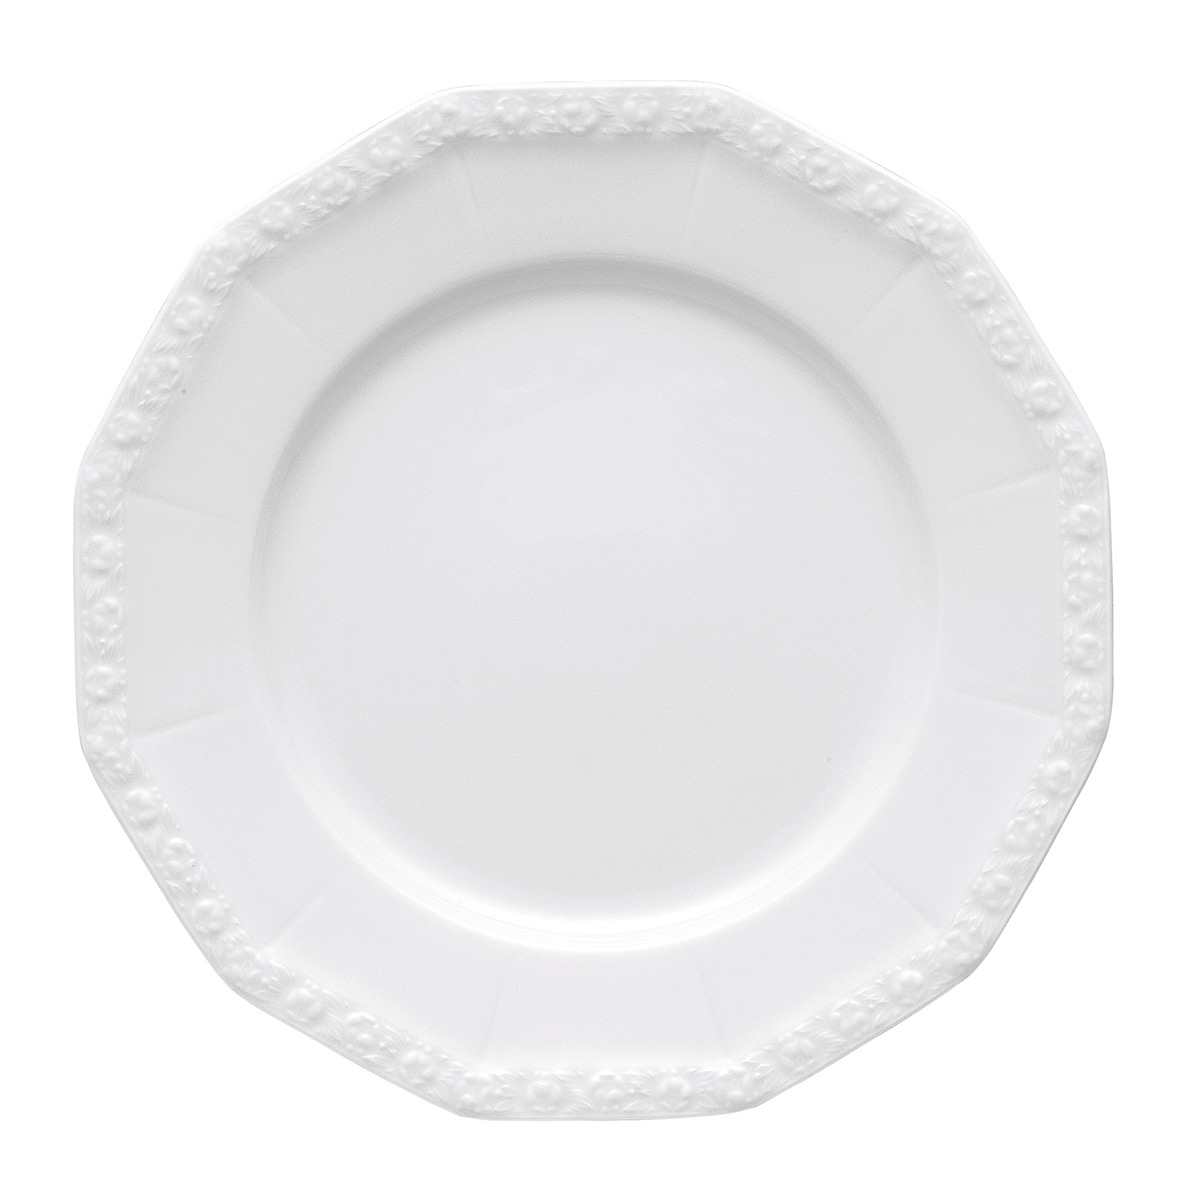 Тарелка для основного блюда / горячего 26 см Maria Rosenthal